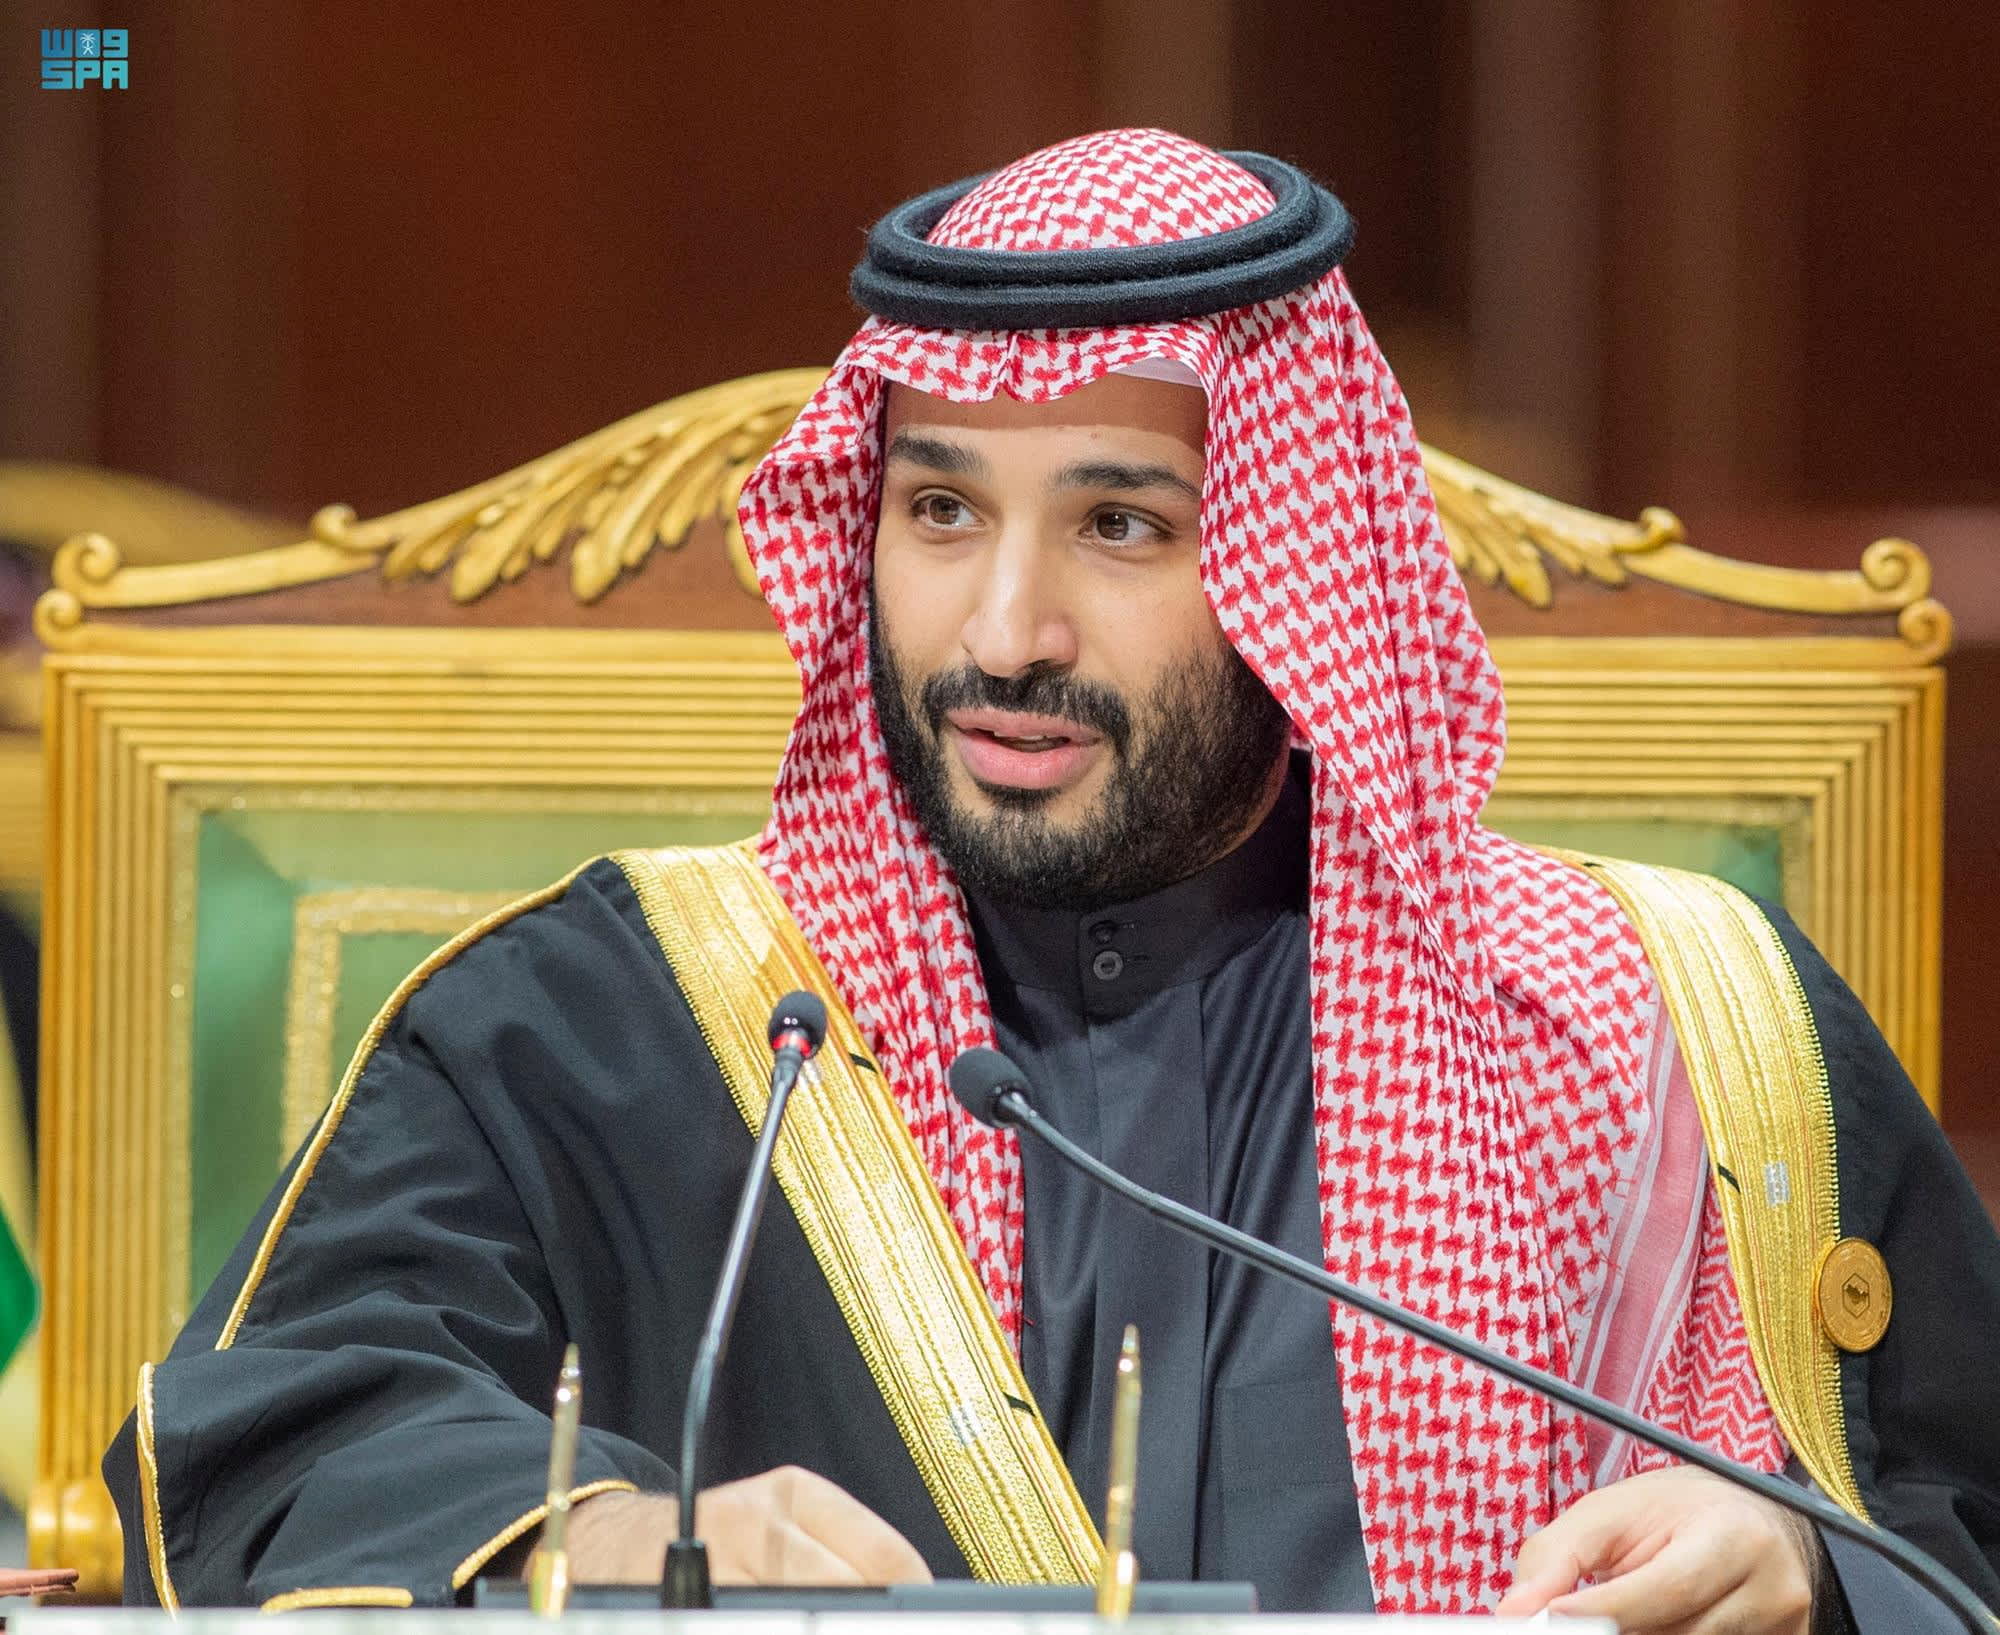 Canadá y Arabia Saudita están reviviendo relaciones diplomáticas después de una disputa de derechos humanos en 2018